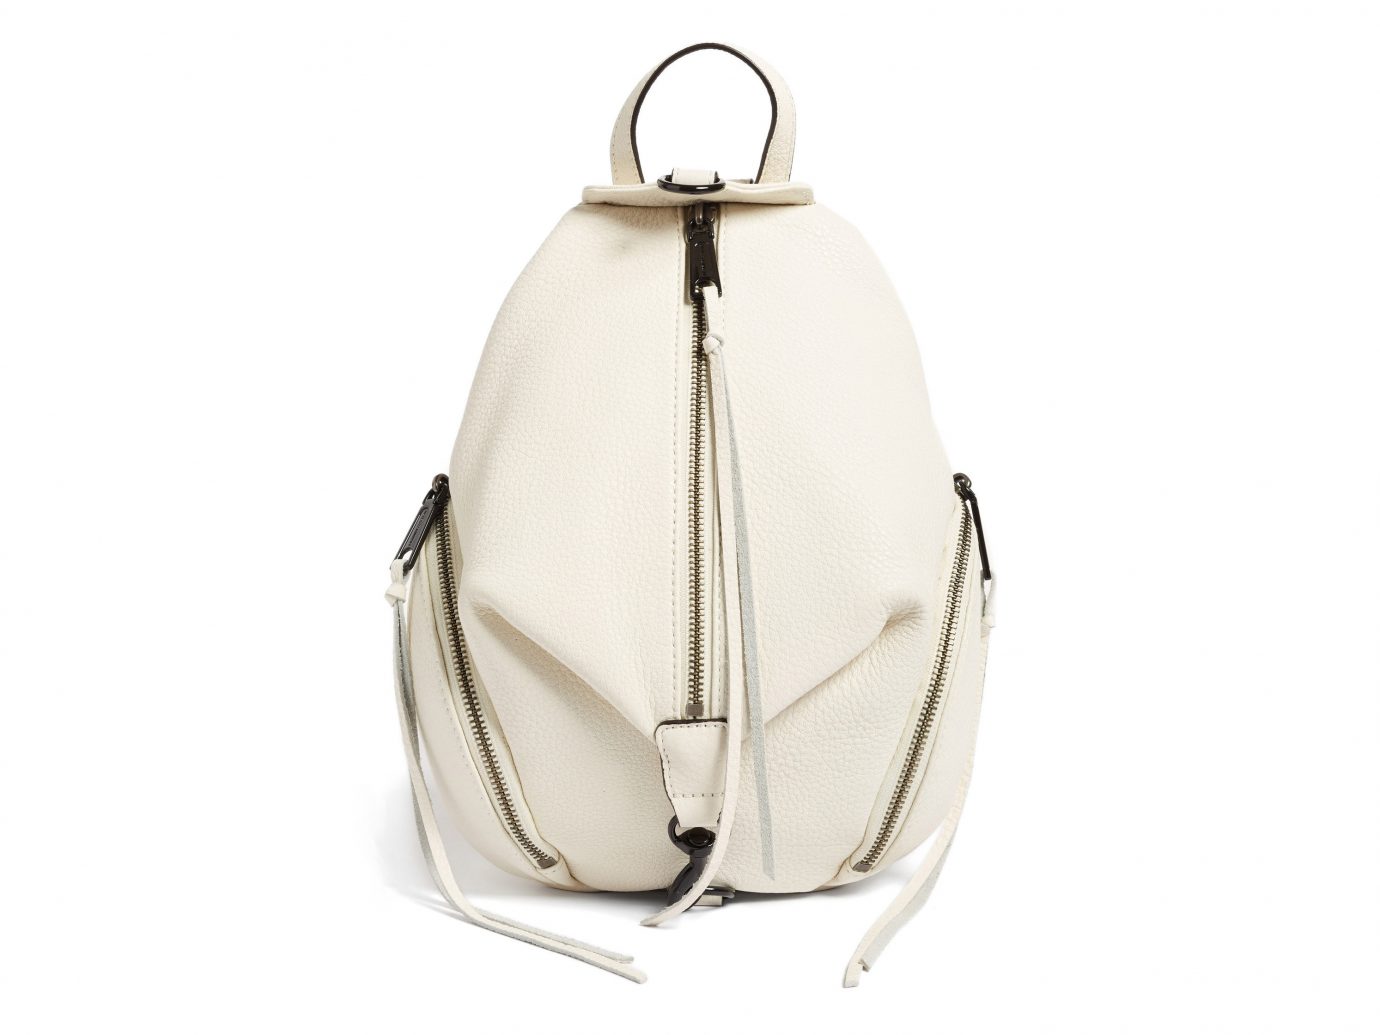 Style + Design white indoor bag handbag beige shoulder bag product product design